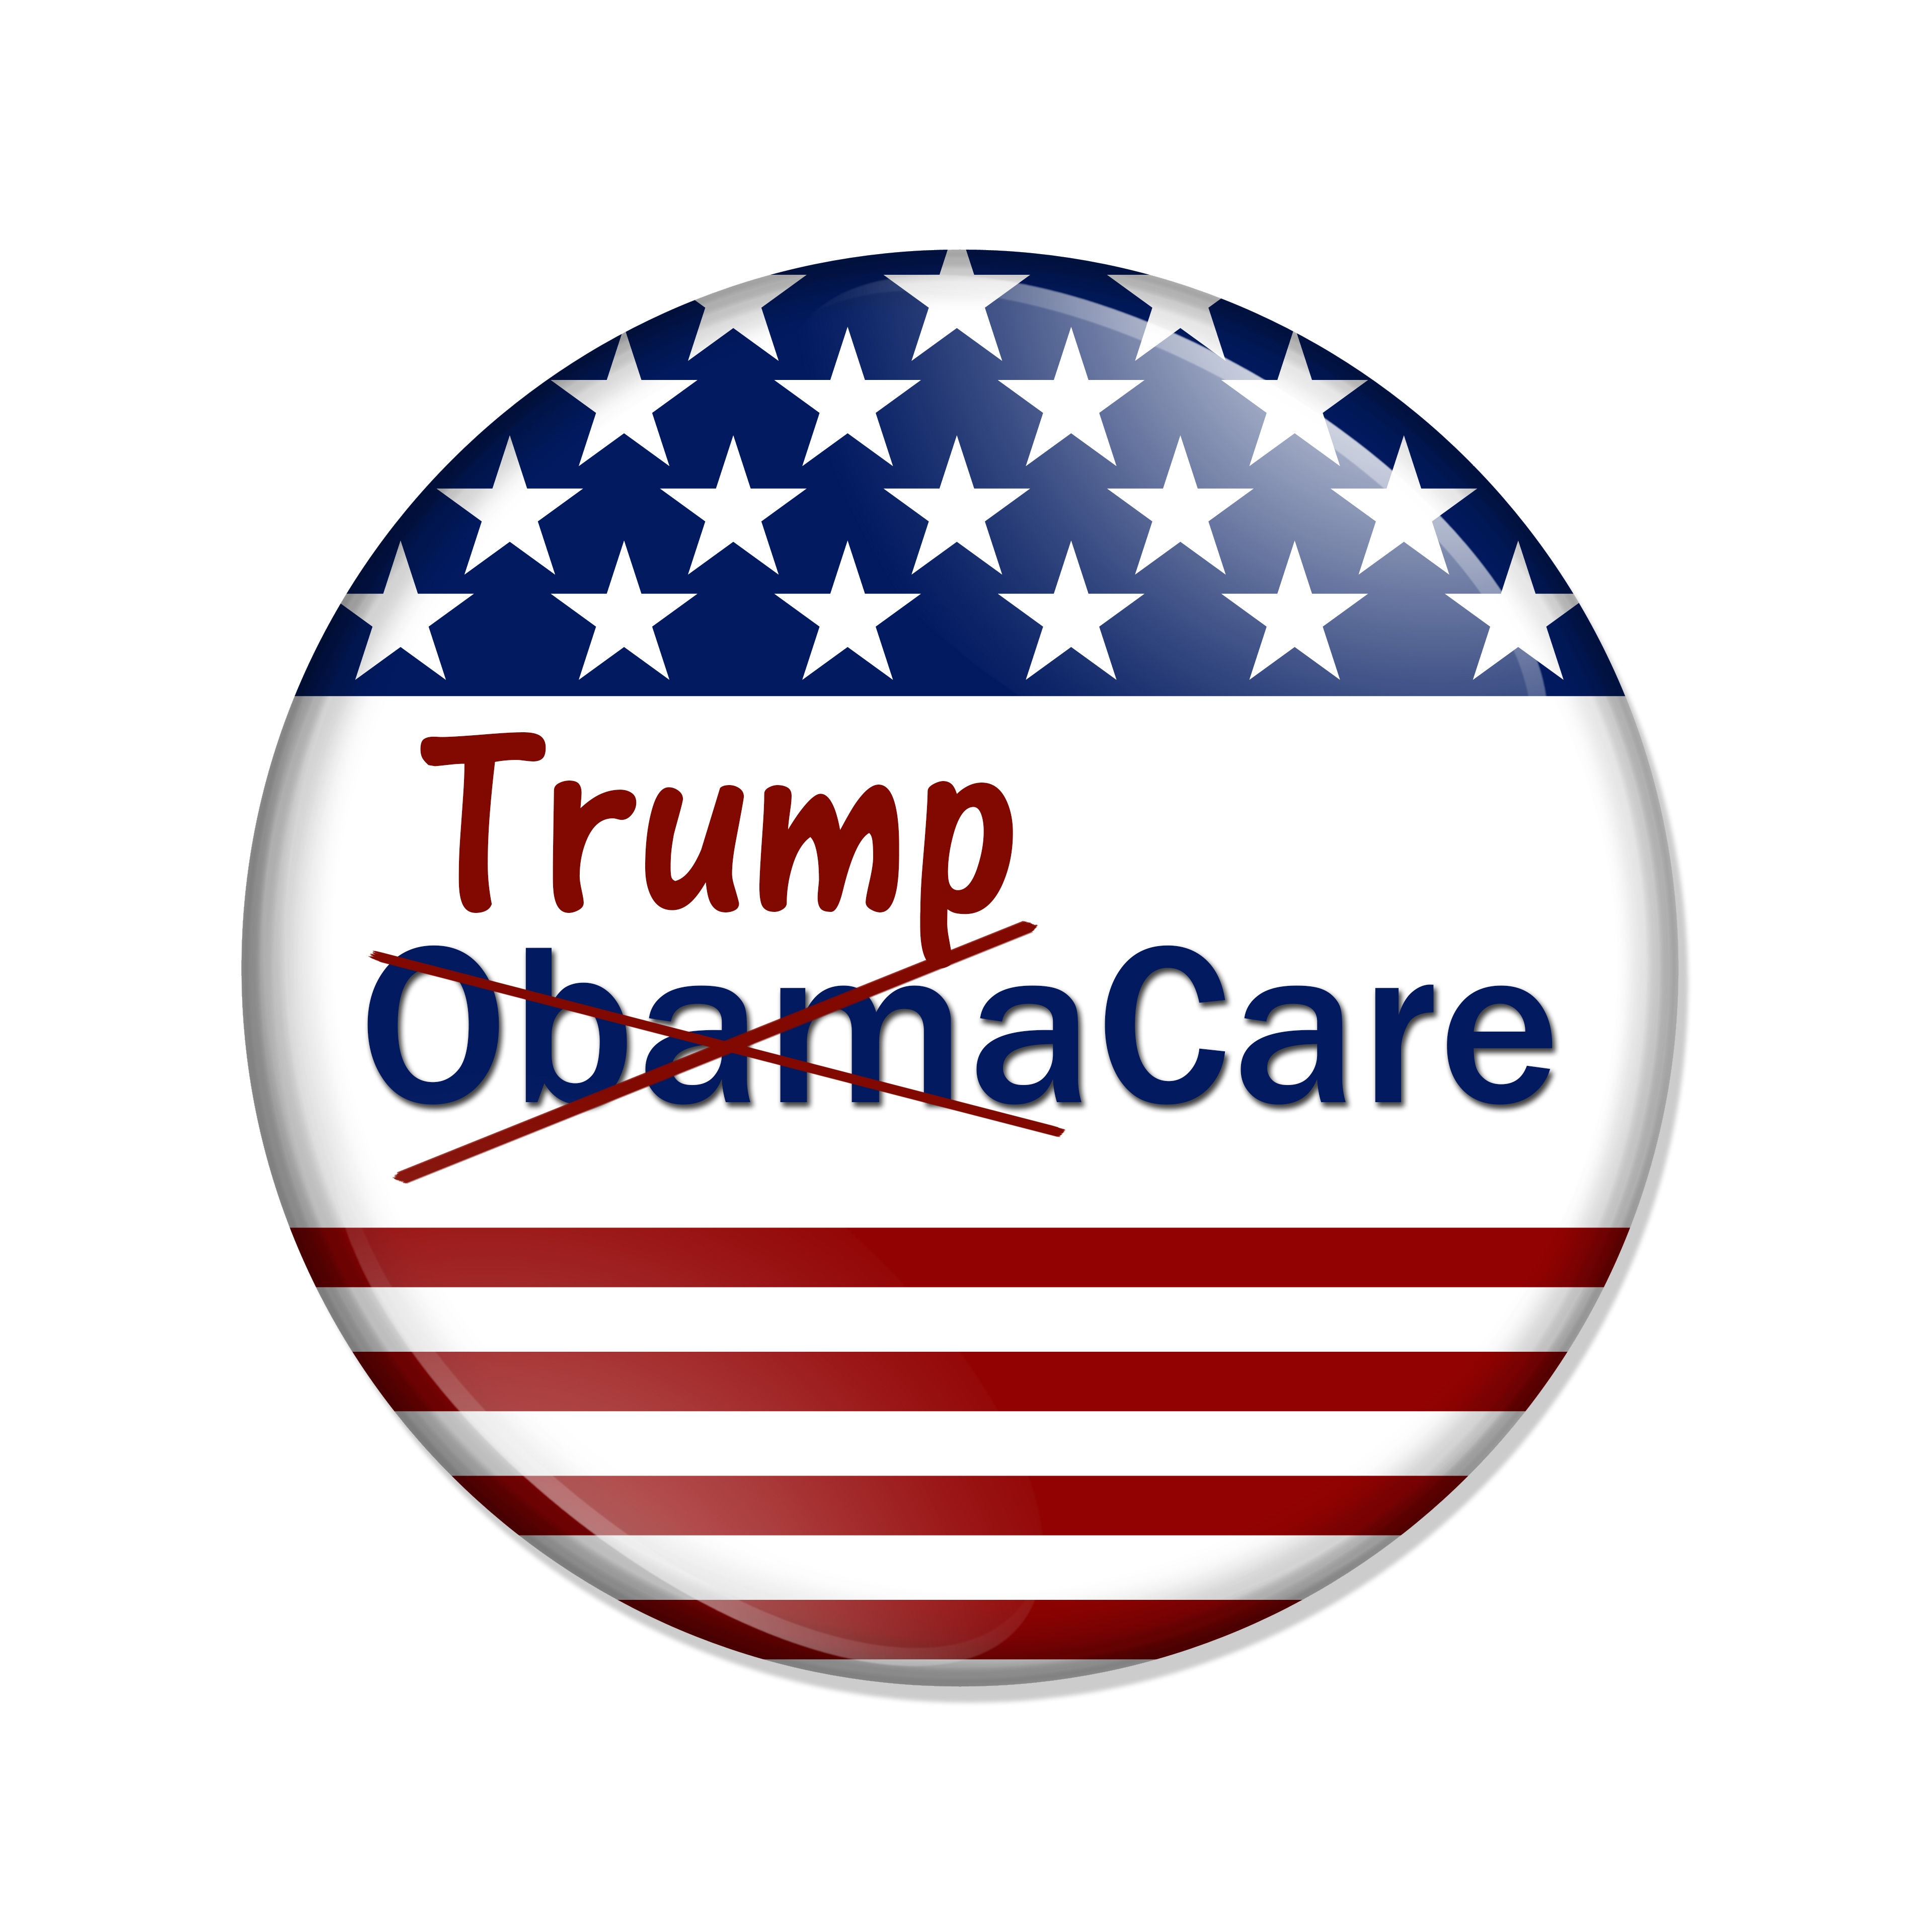 ACA, Trumpcare vs Obamacare